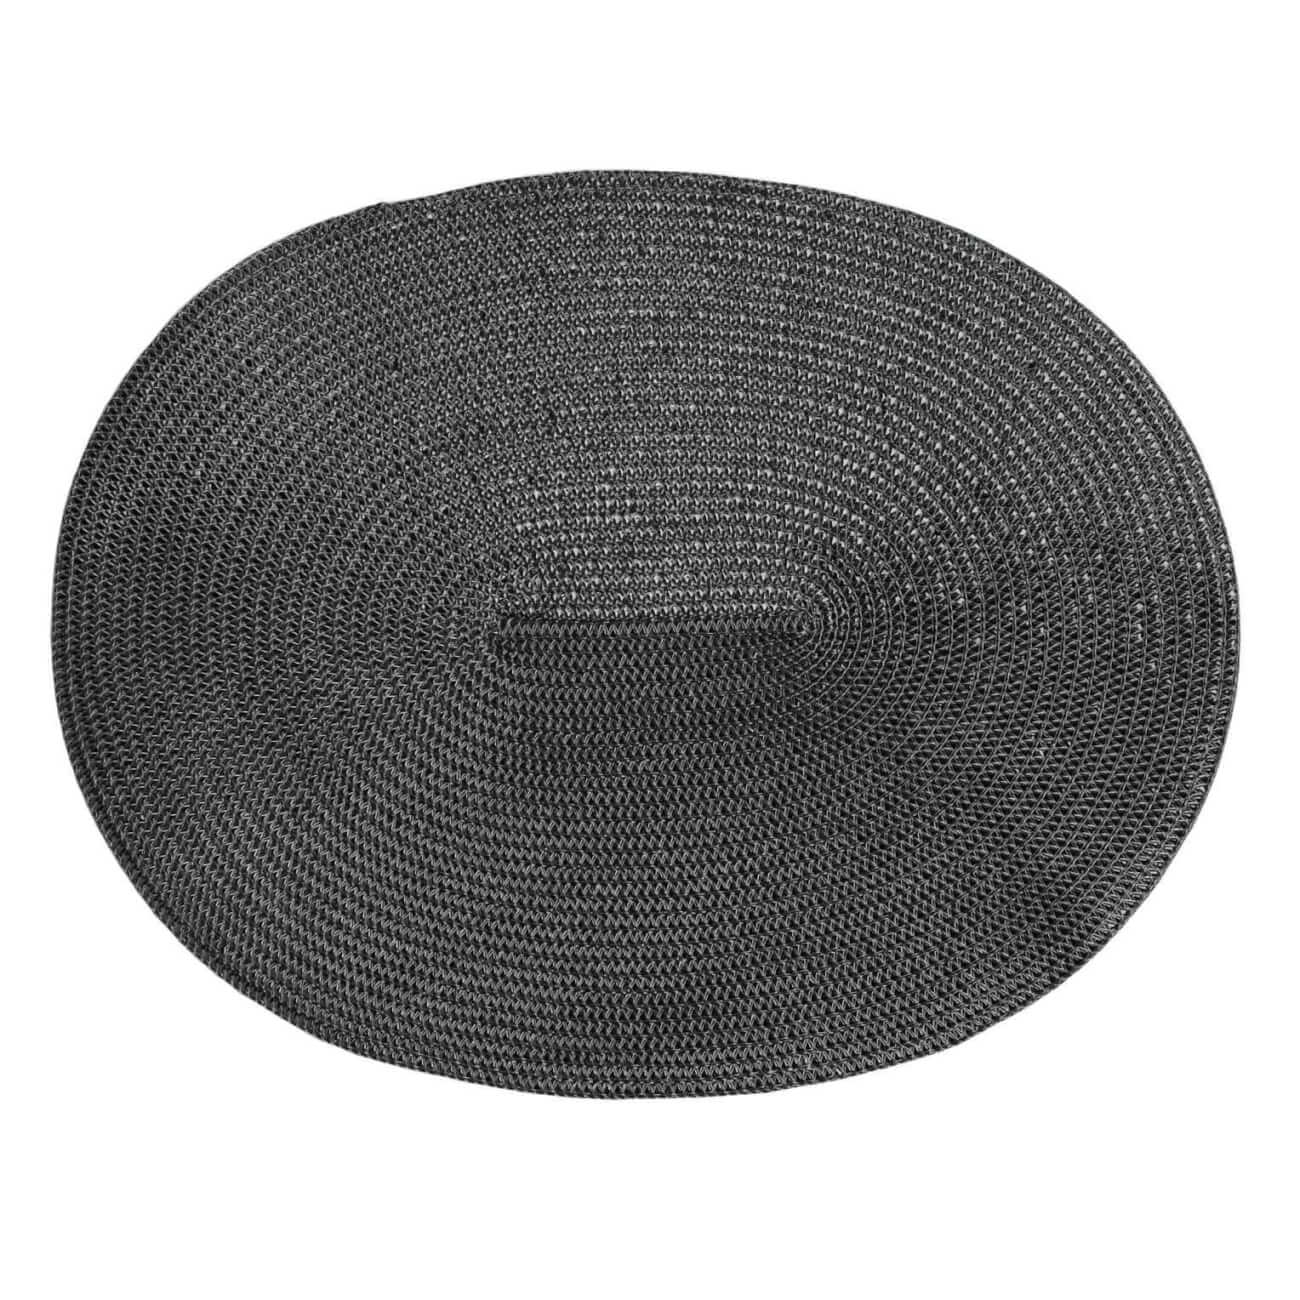 Салфетка под приборы, 30х45 см, полиэстер, овальная, черная, Circle shine - фото 1